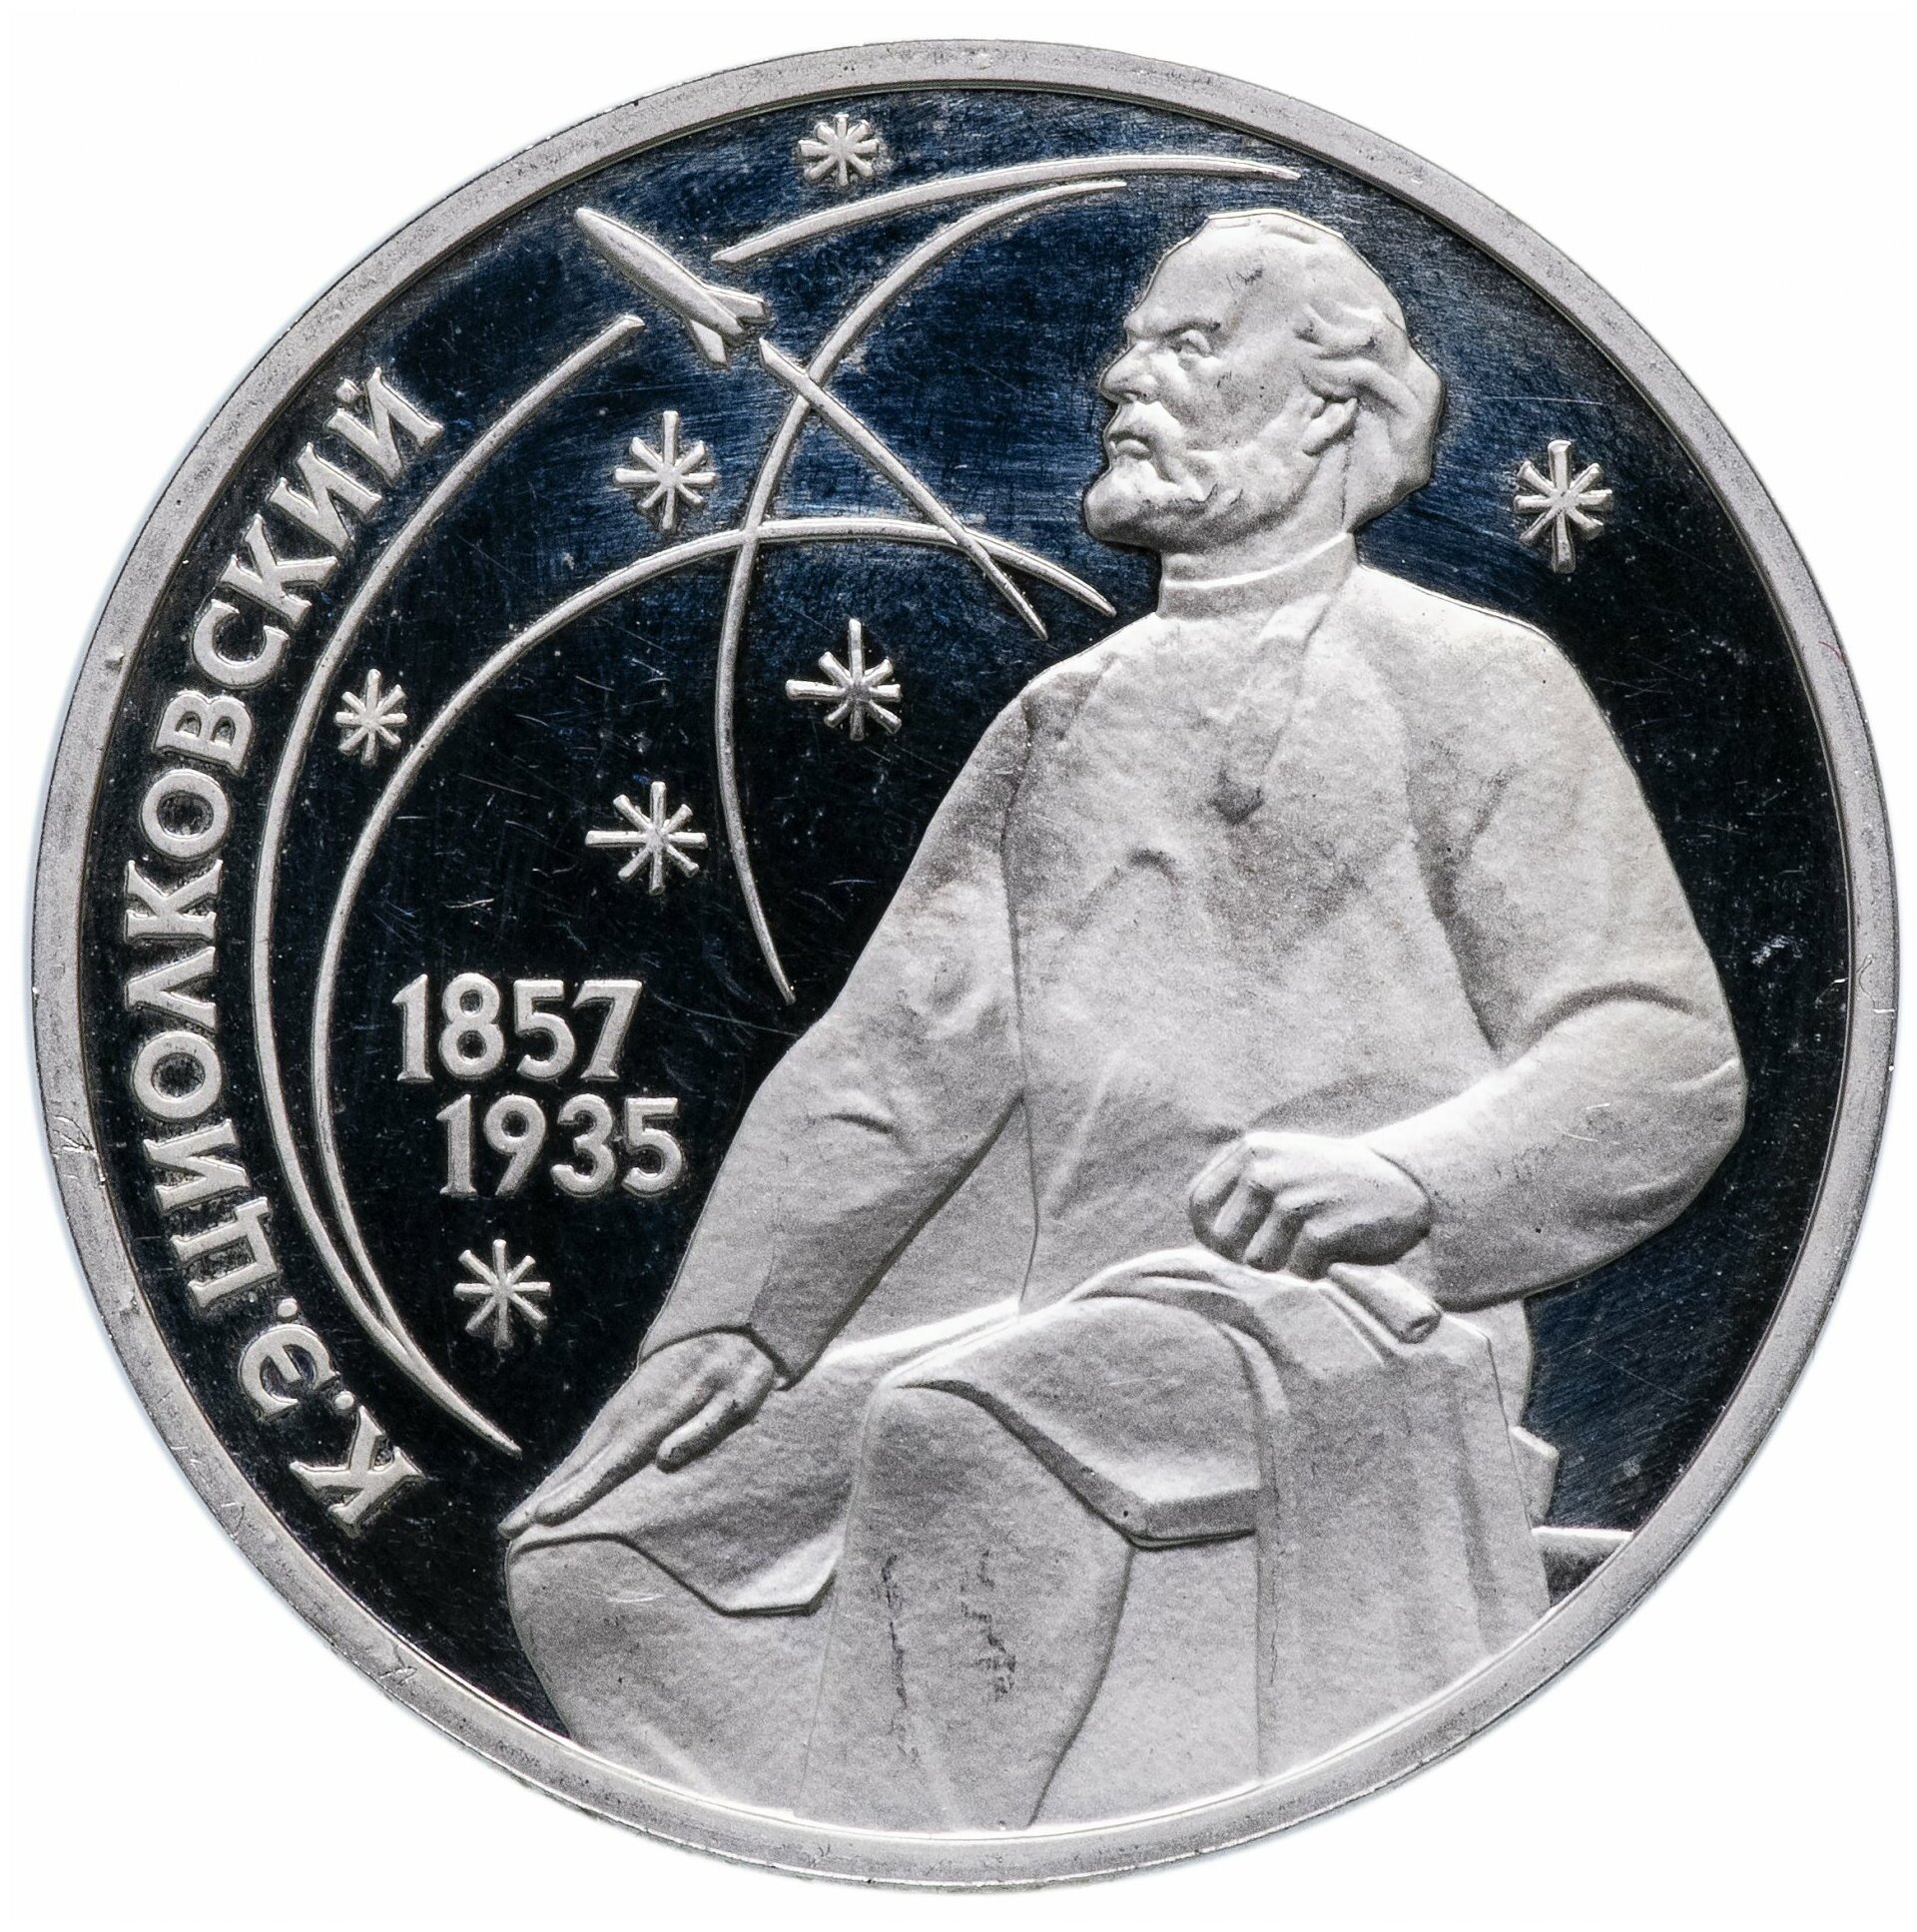 1 рубль 1987 Proof "130 лет со дня рождения основоположника отечественной космонавтики К. Э. Циолковского"